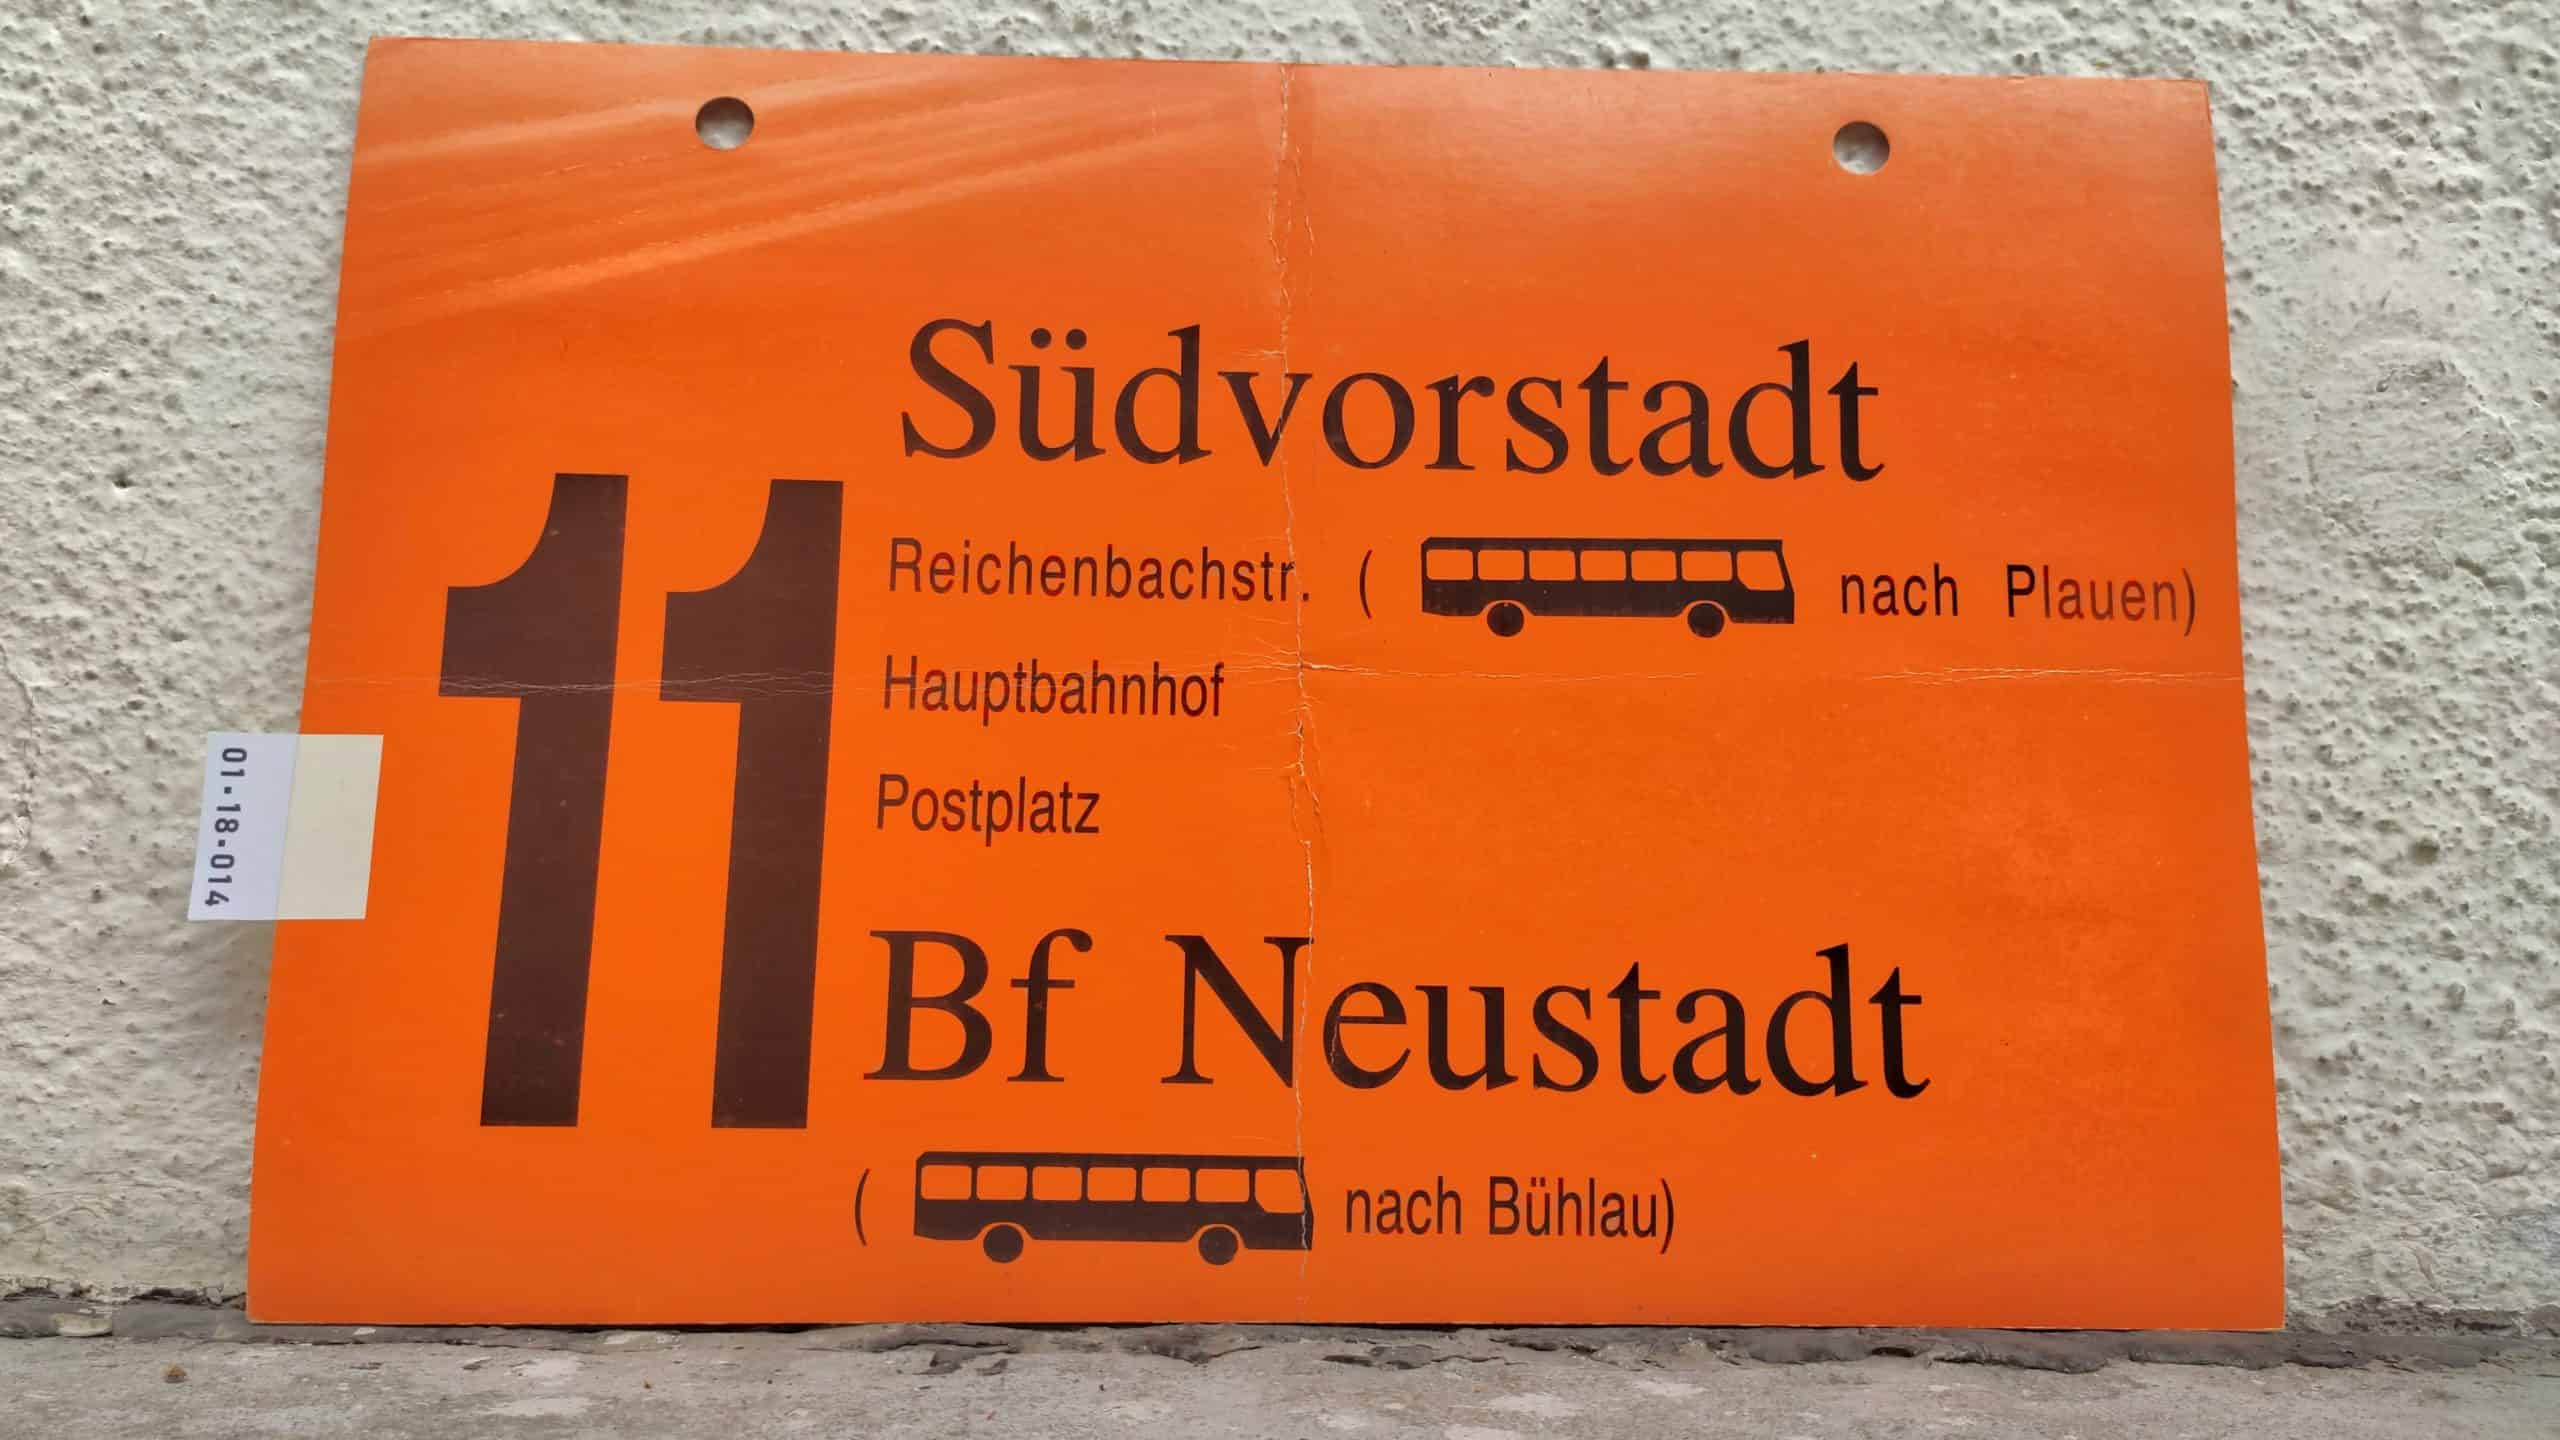 11 Südvorstadt – Bf Neustadt ( [Bus neu] nach Bühlau)